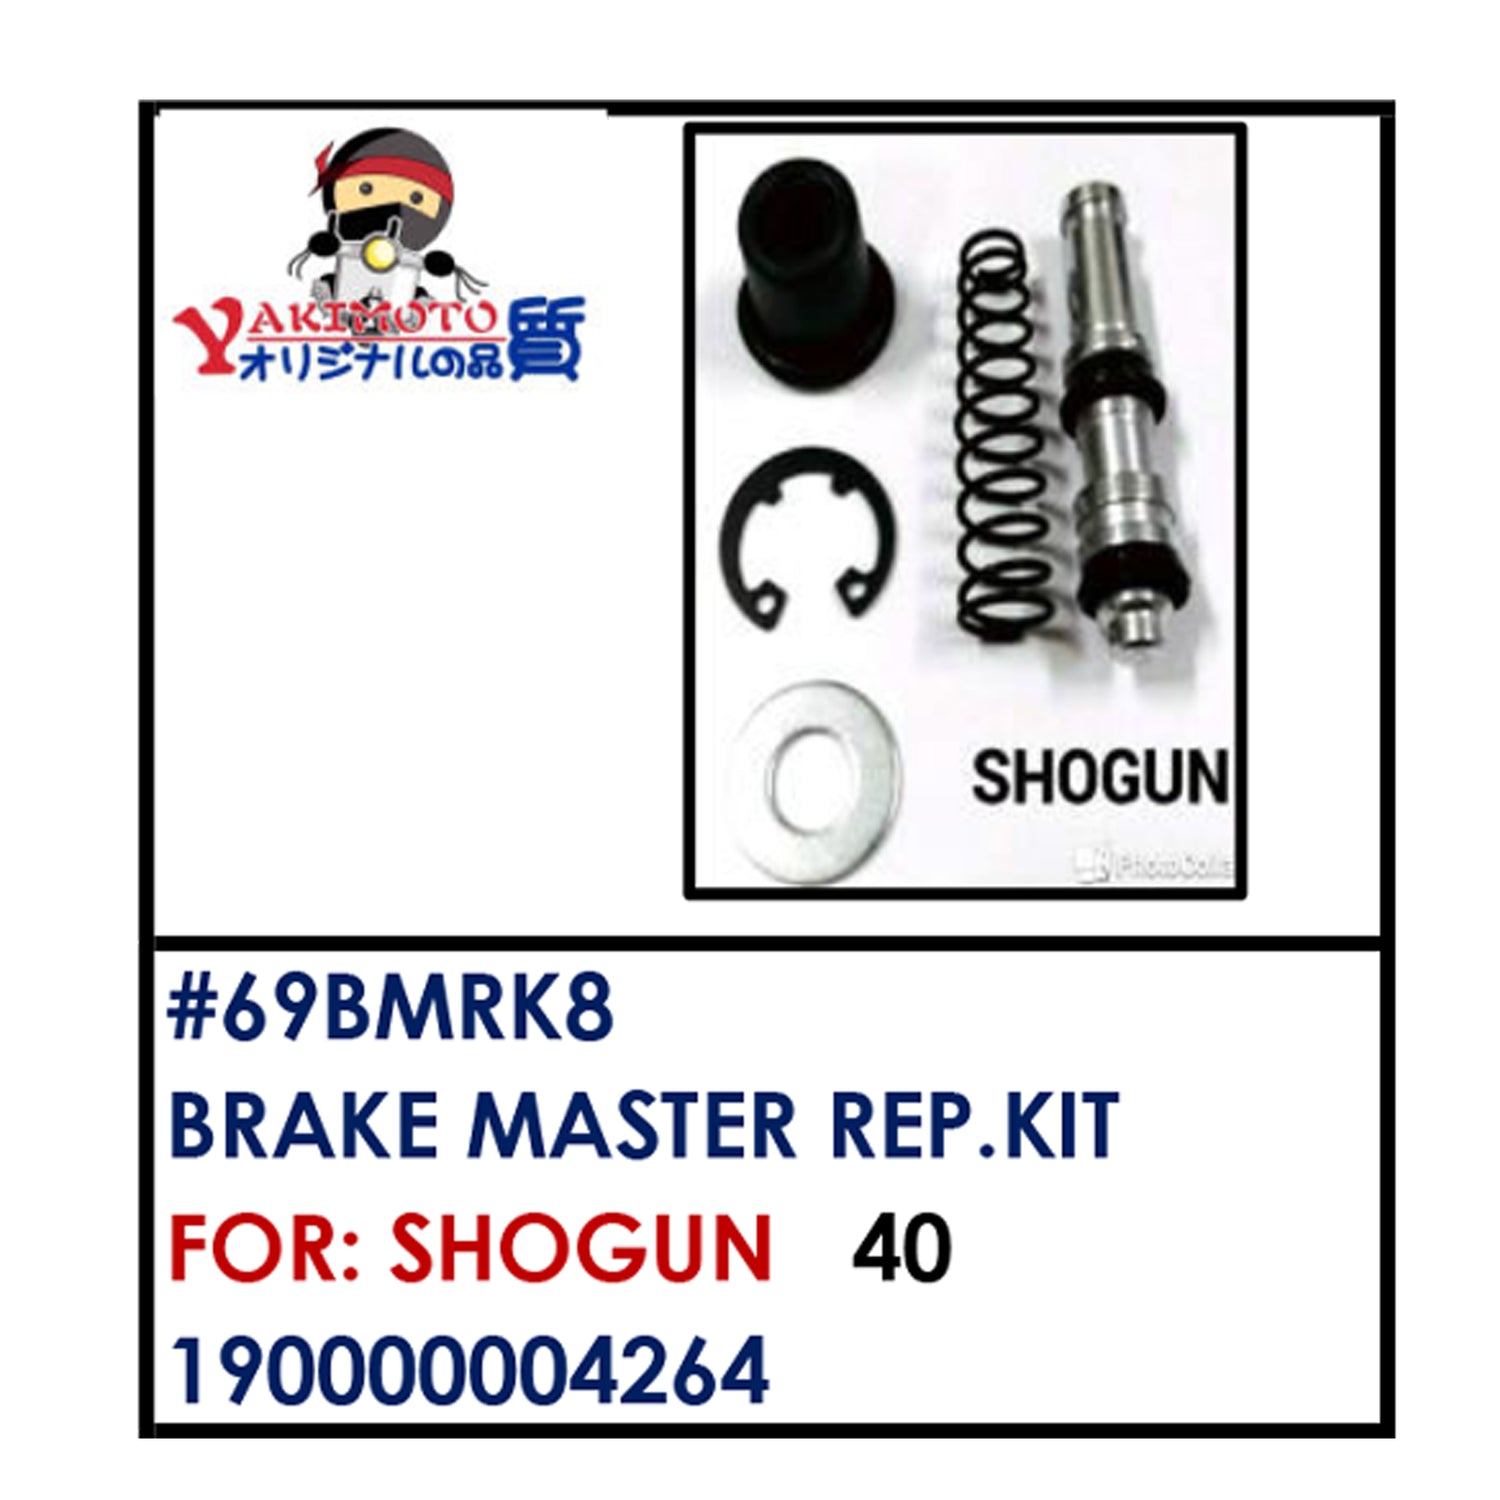 BRAKE MASTER REAPIR KIT (69BMRK8) - SHOGUN | YAKIMOTO - BESTPARTS.PH